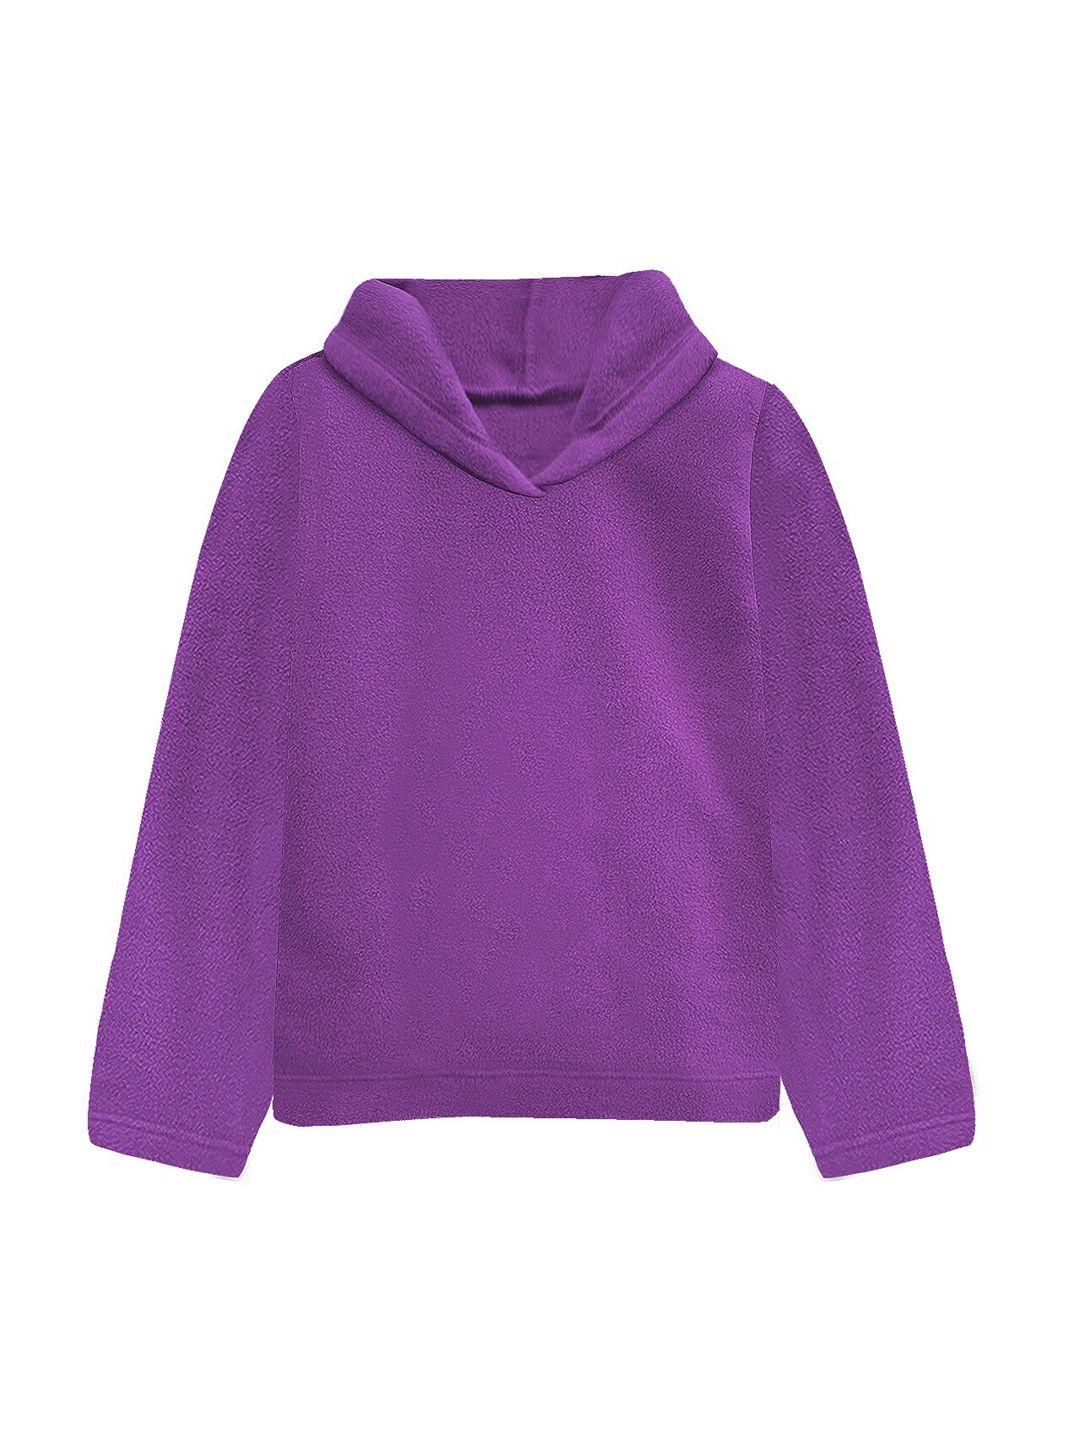 a t u n women purple hooded sweatshirt